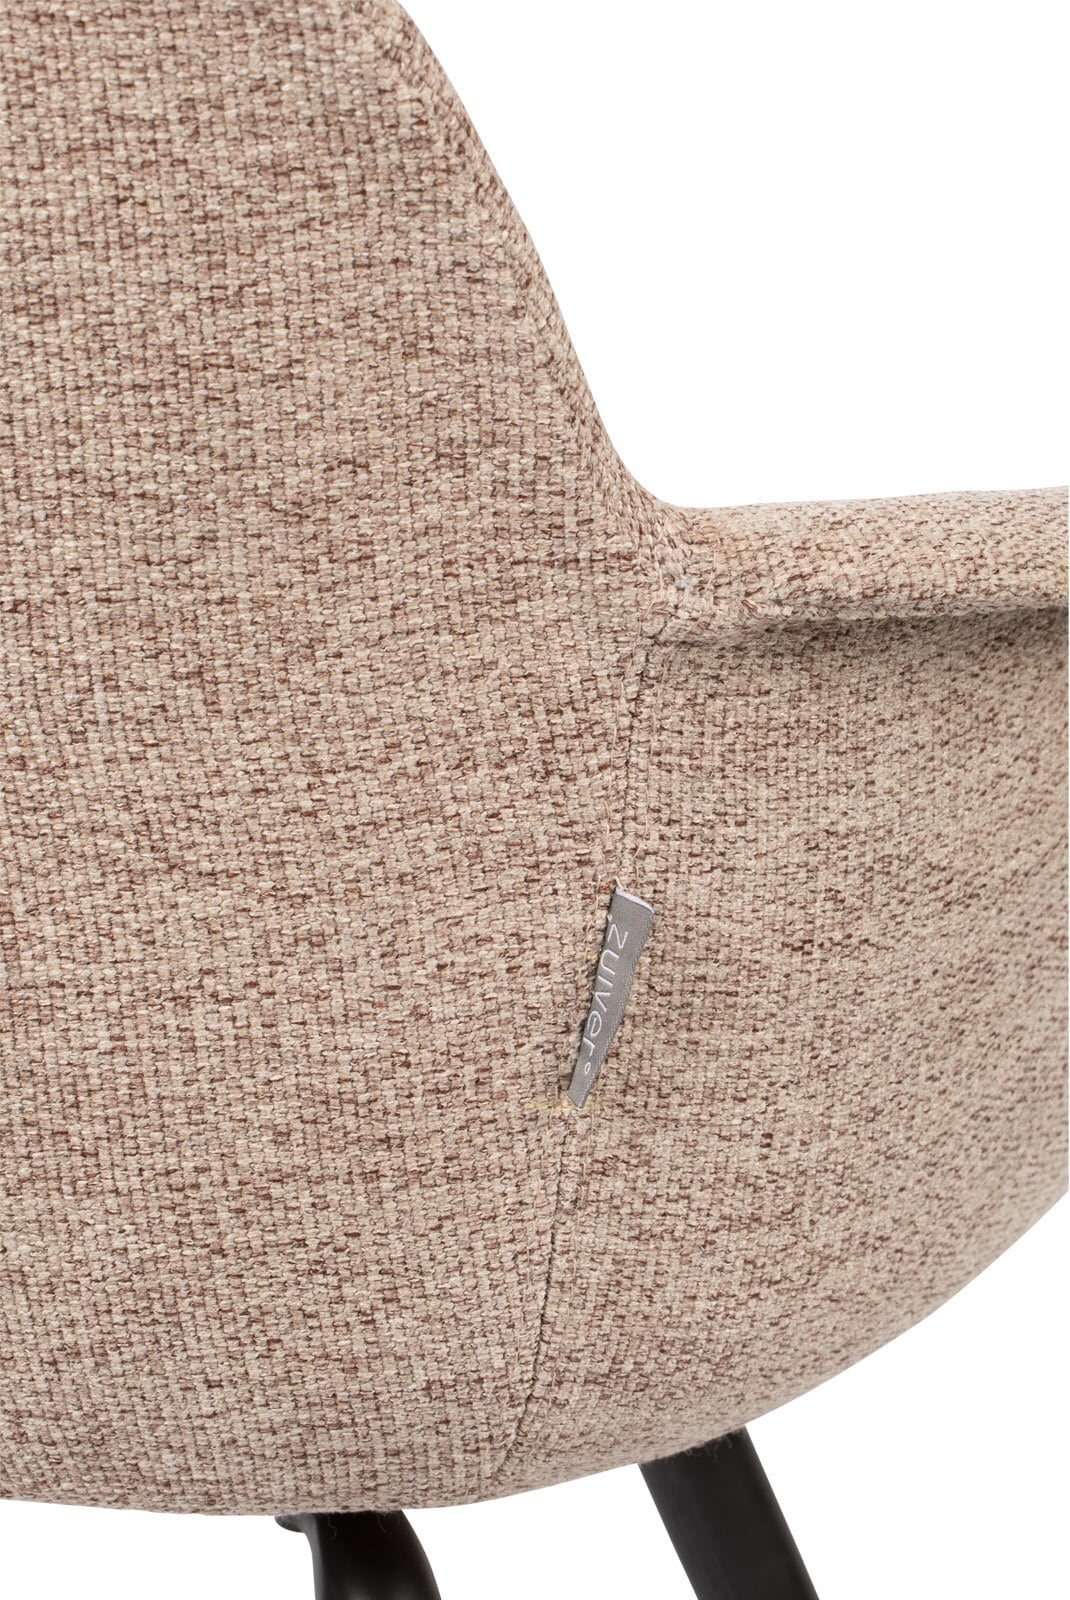 zuiver Stuhl ALBERT KUIP SOFT mit Armlehnen Textil beige